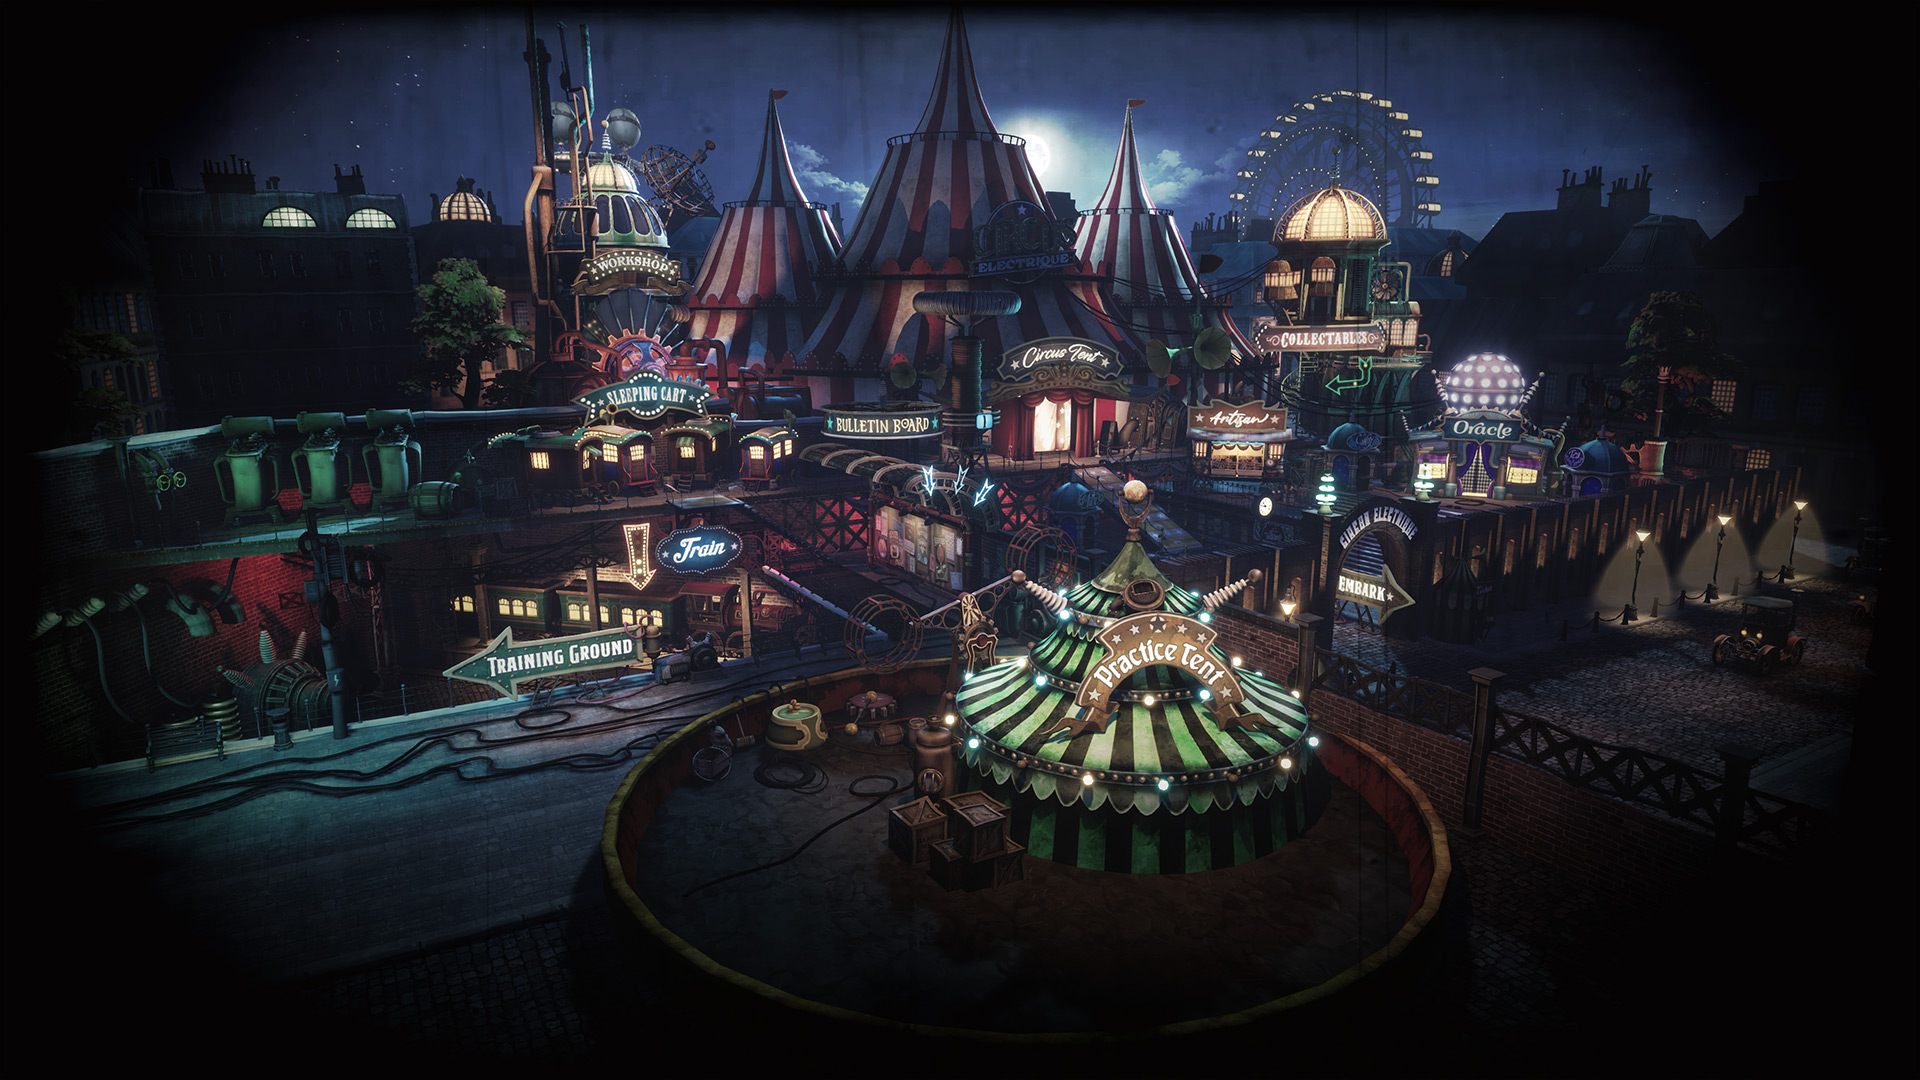 Am 6. September wird Circus Electrique veröffentlicht - ein Steampunk-Zirkus im Geiste von Darkest Dungeon